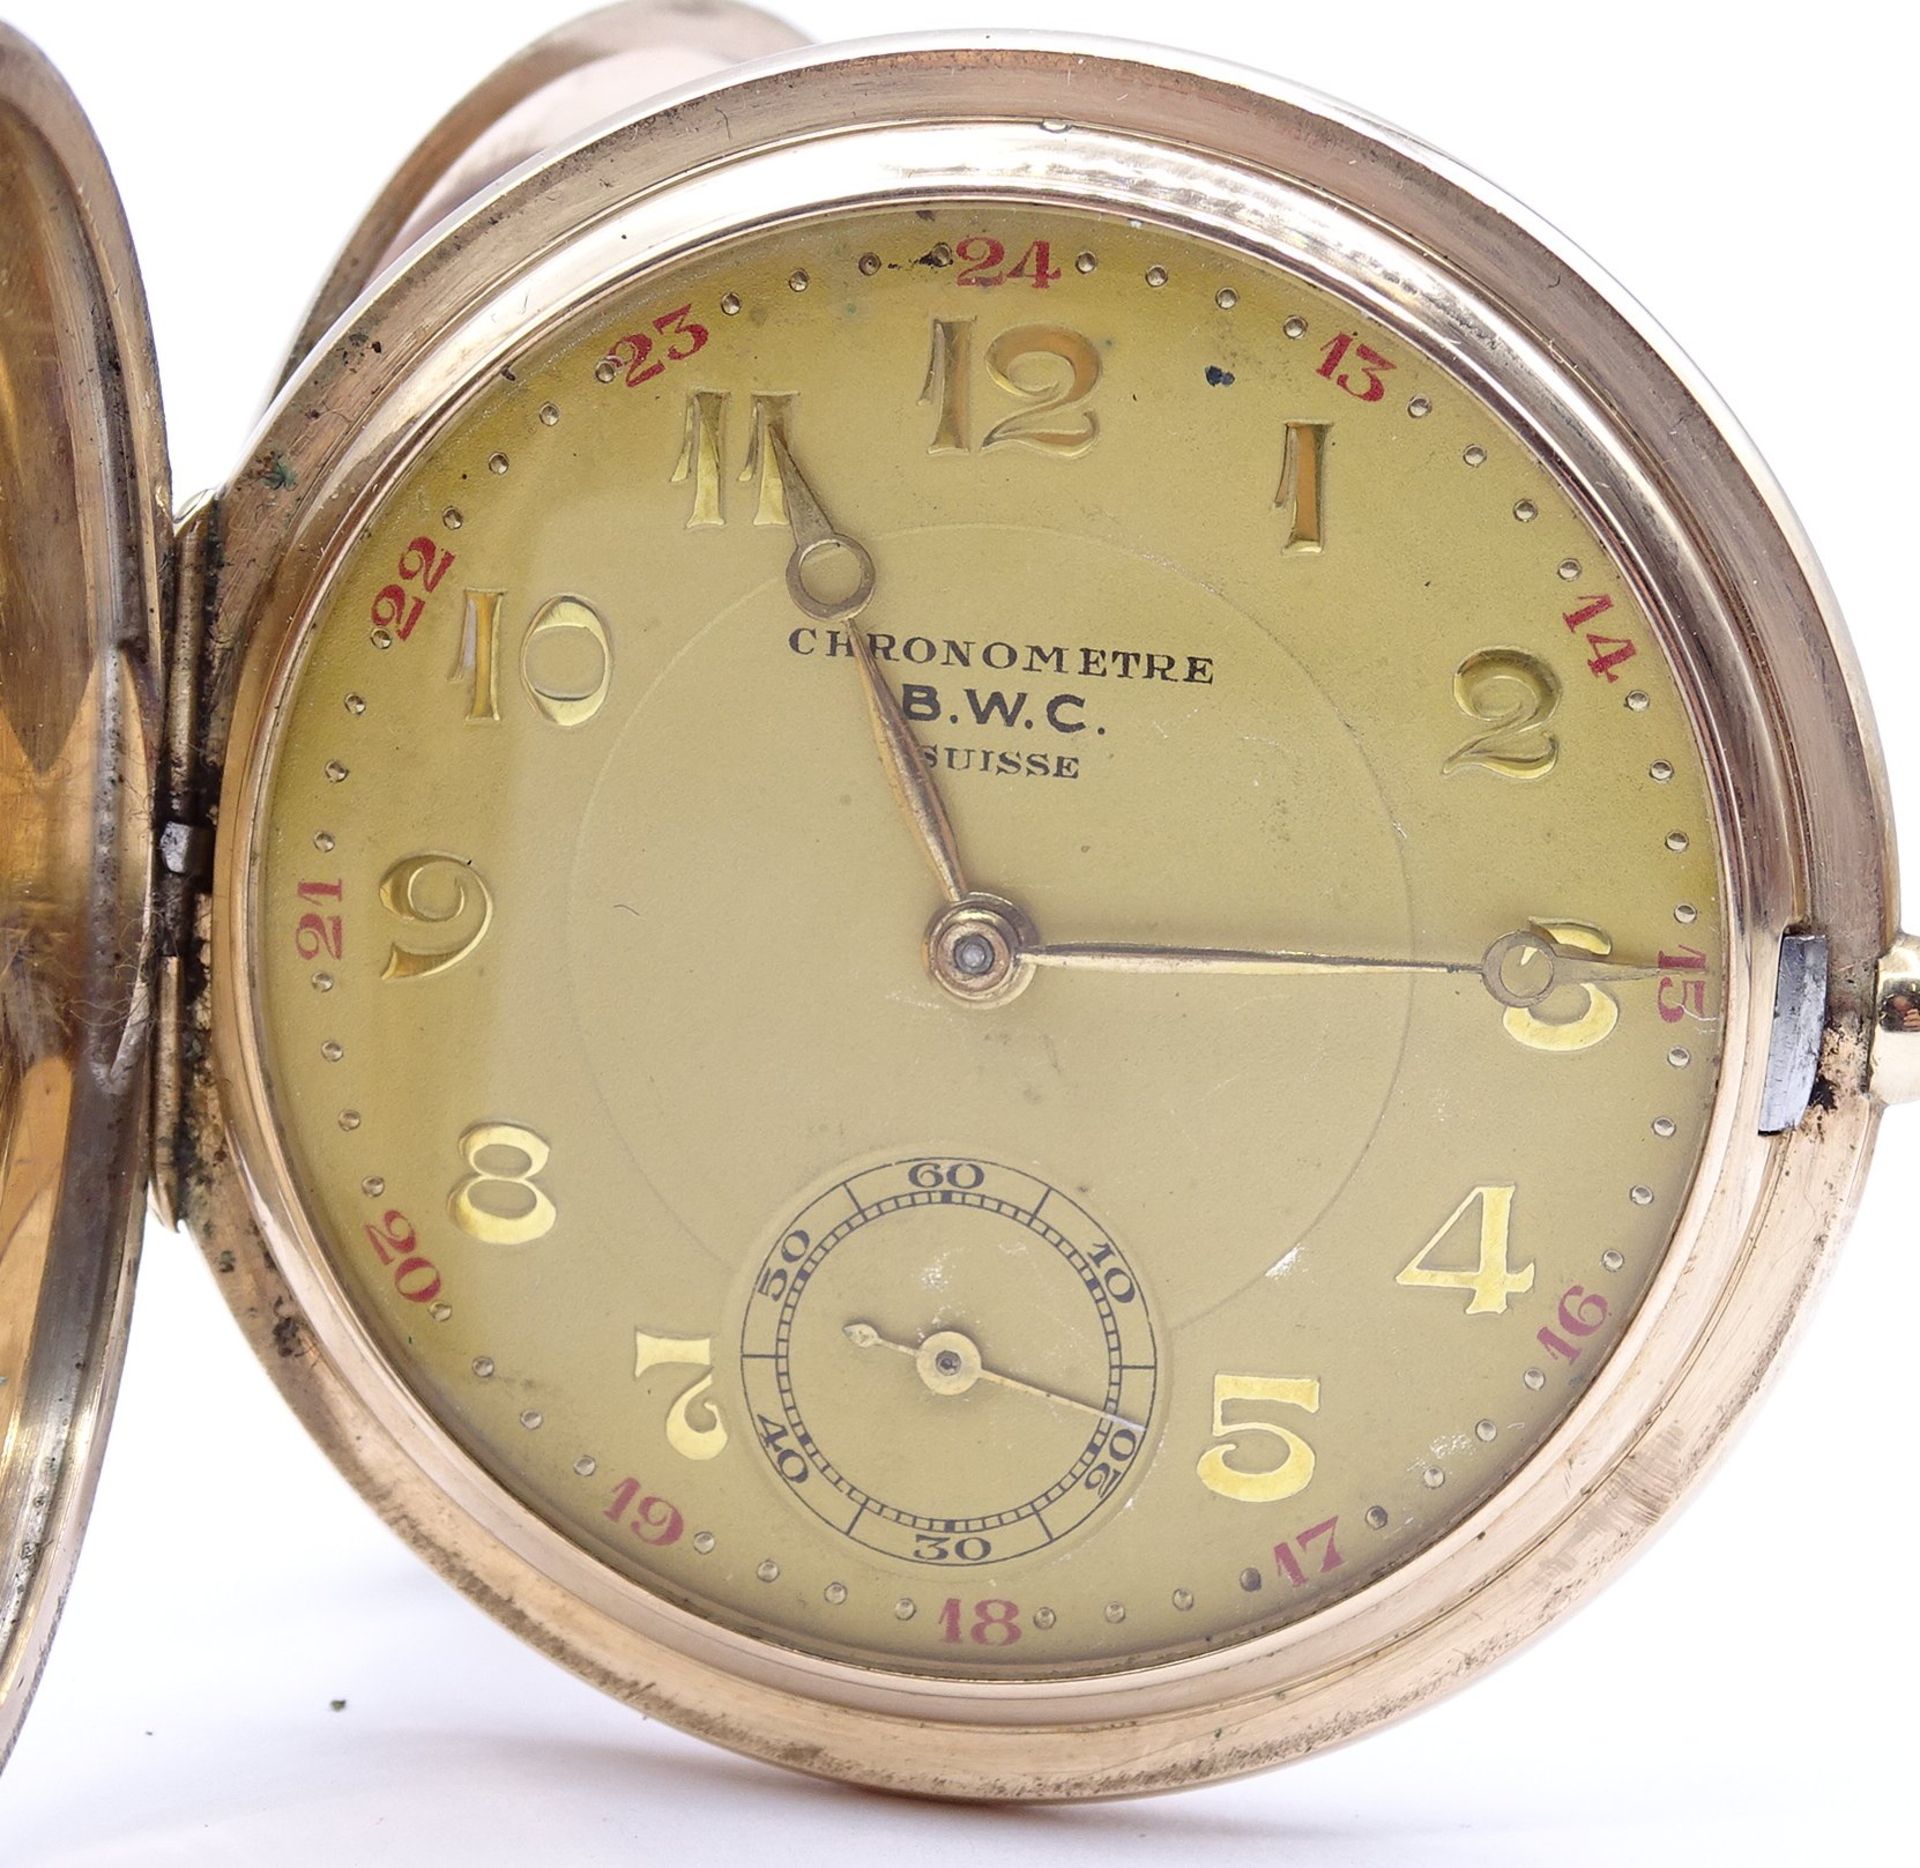 Herren Taschenuhr B.W.C. Chronometre, mechanisch, Krone fehlt, Funktion nicht überprüft, D. 49mm, B - Bild 2 aus 6